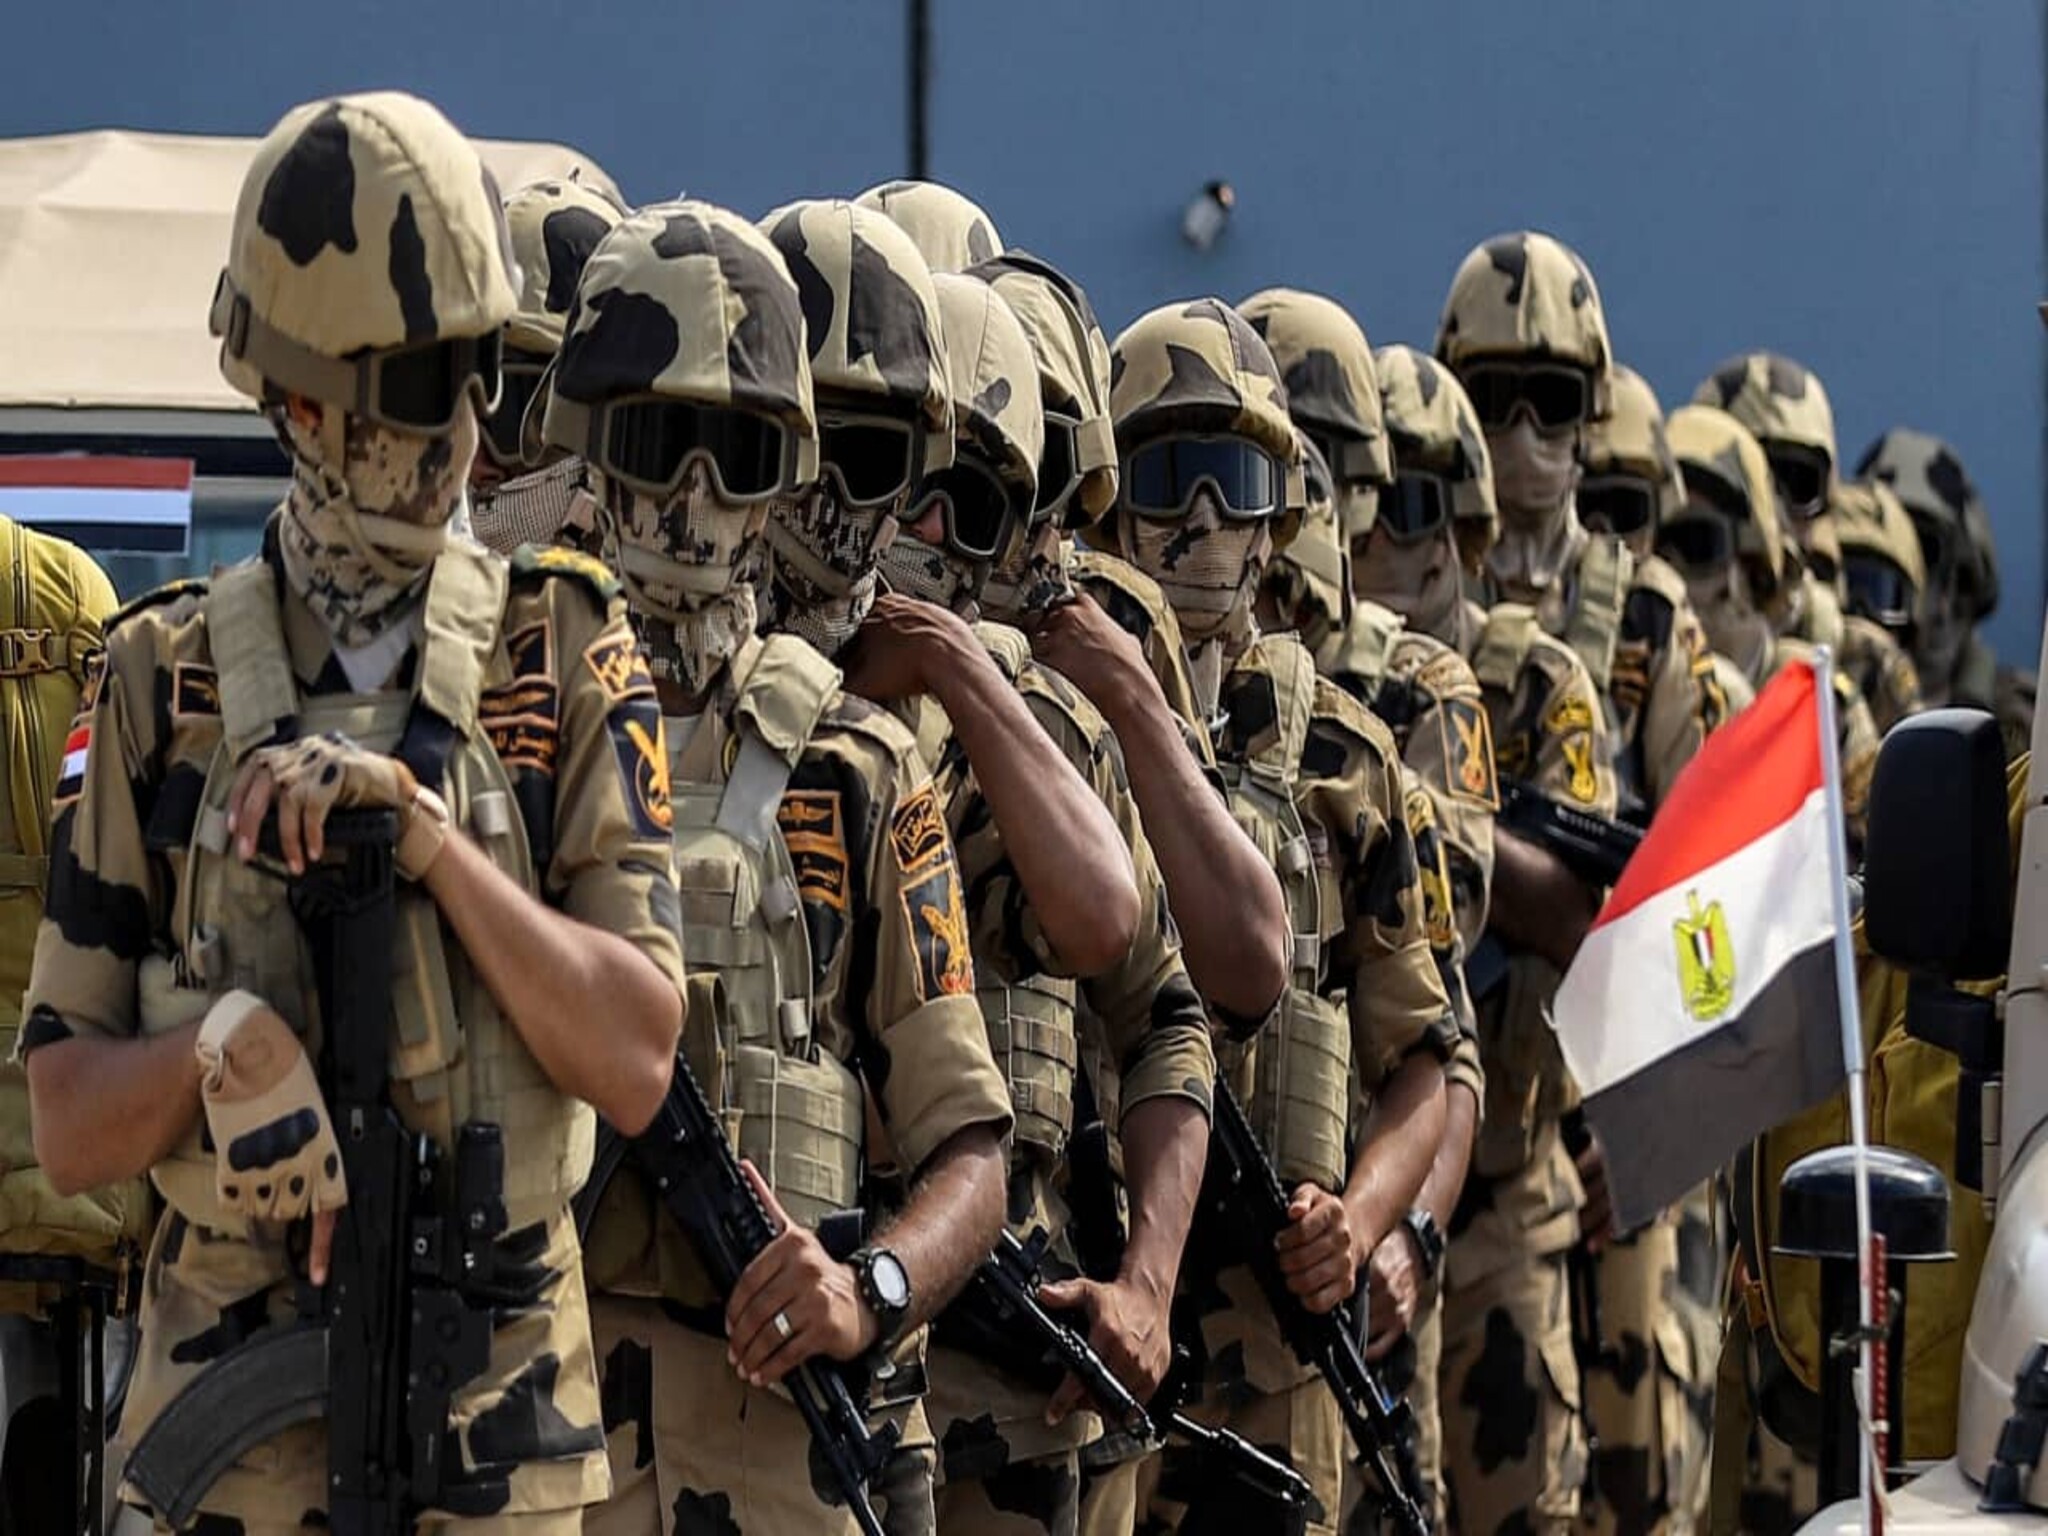 القوات المسلحة المصرية | شروط التطوع في الجيش المصري بالخطوات